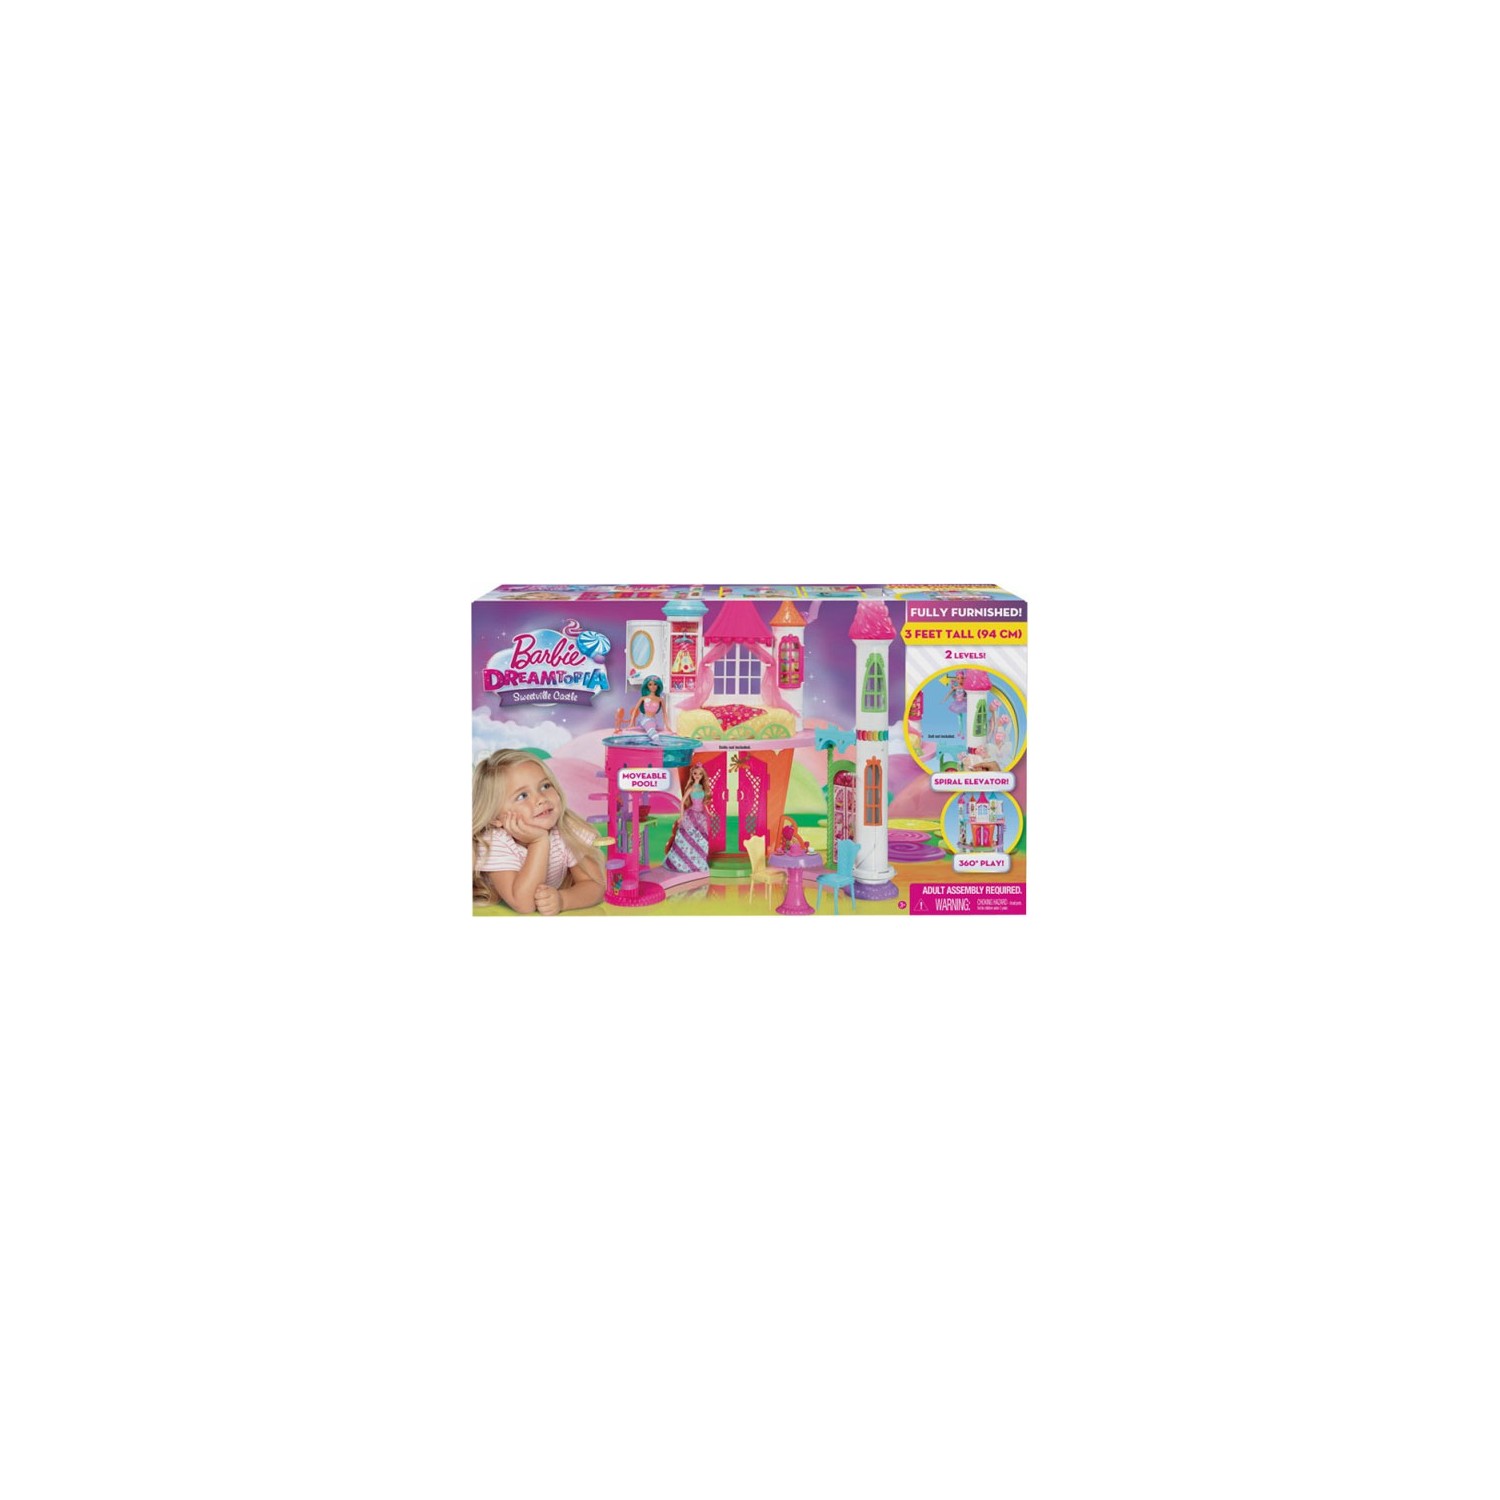 Кукла Barbie Dreamtopia Candy Kingdom Castle DYX32 barbie playset dreamtopia sweetsville